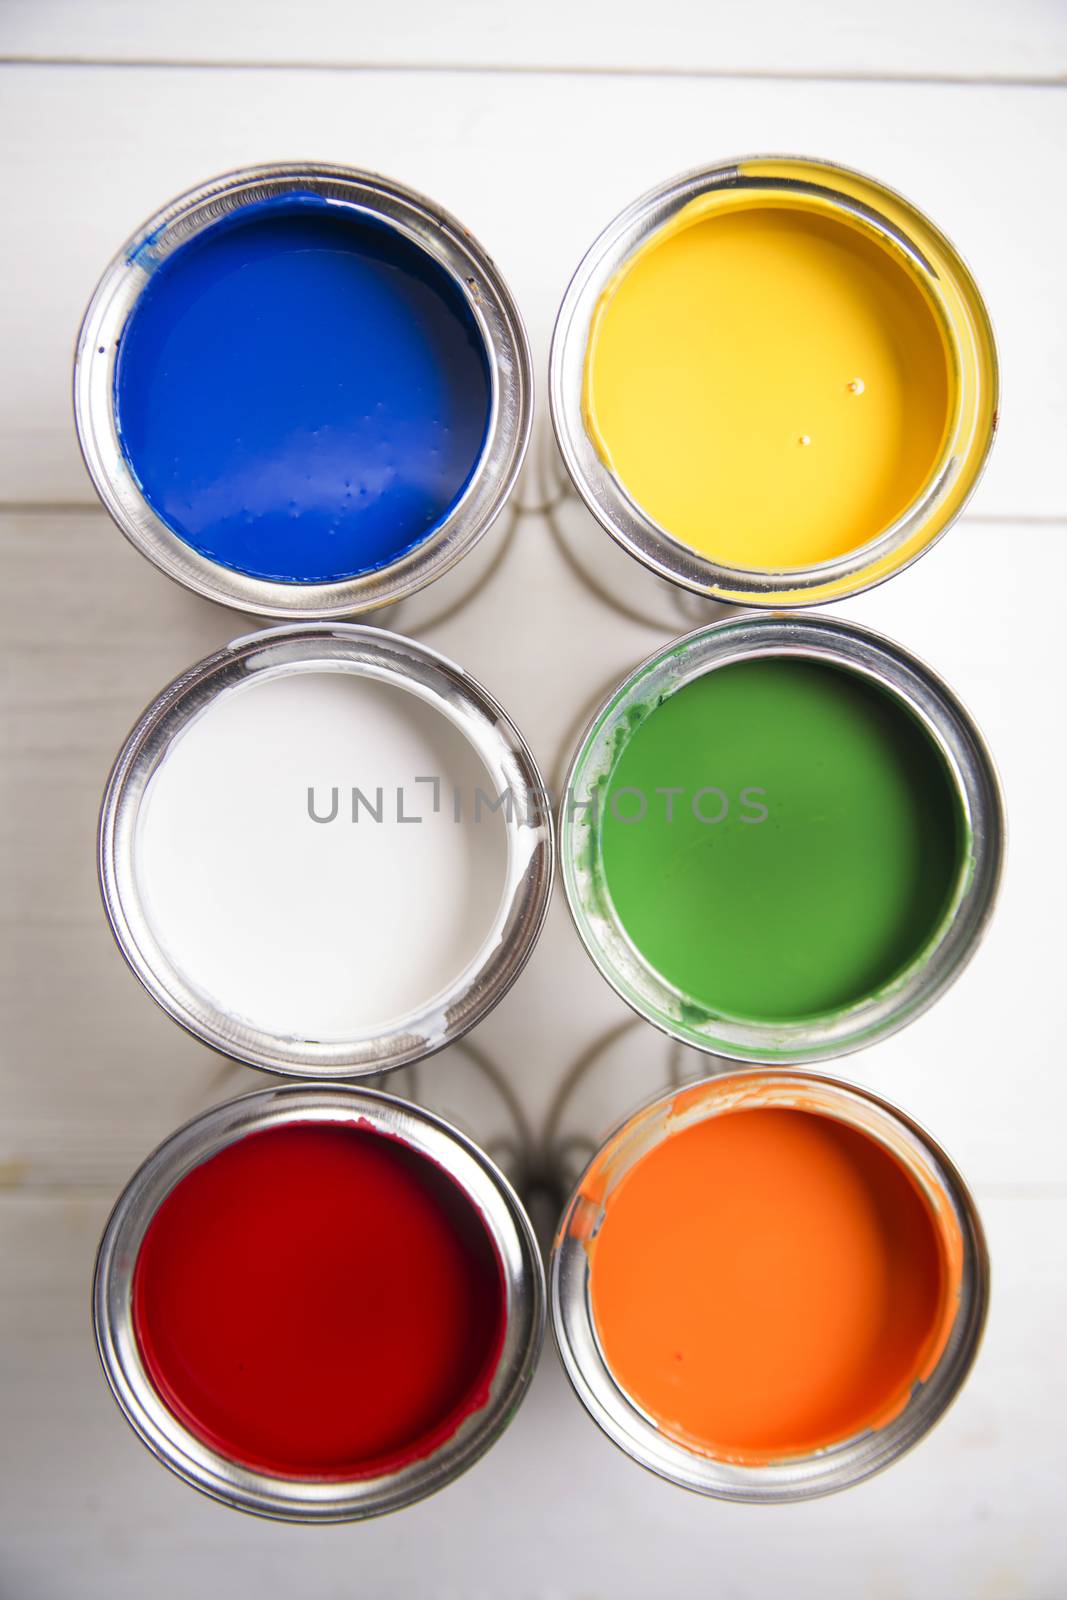 Paint cans by fotografiche.eu